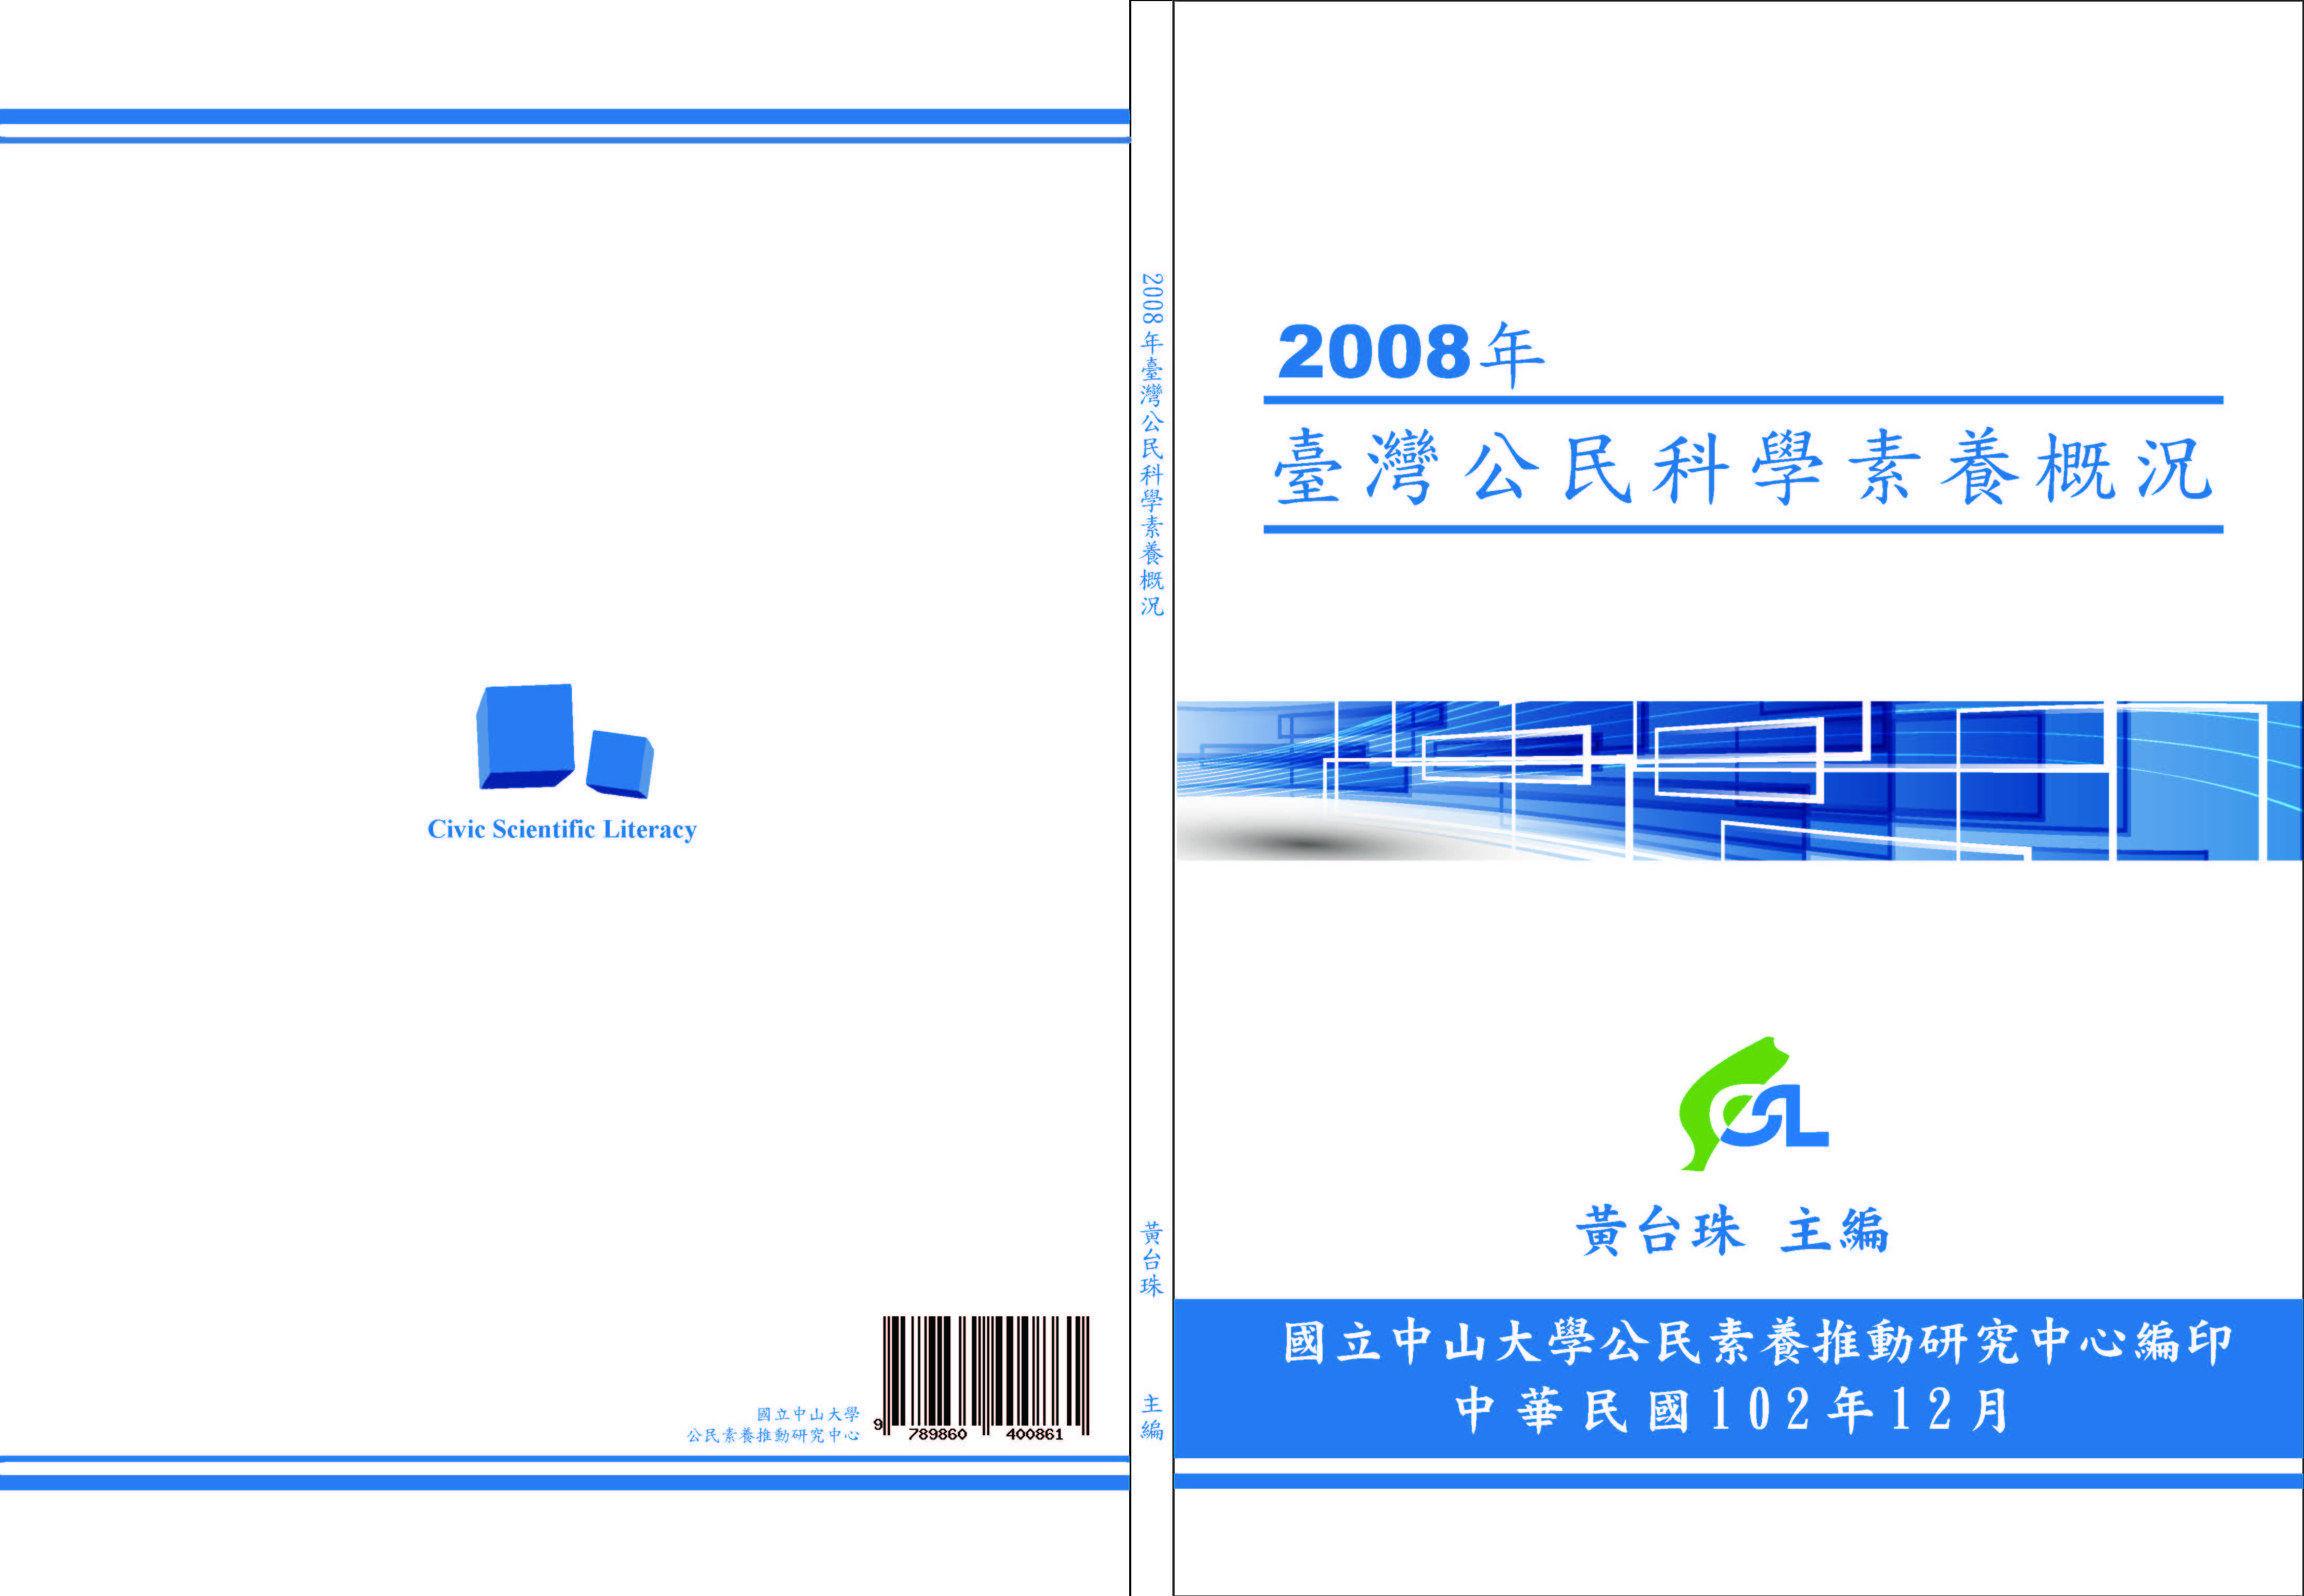 2008年臺灣公民科學素養概況